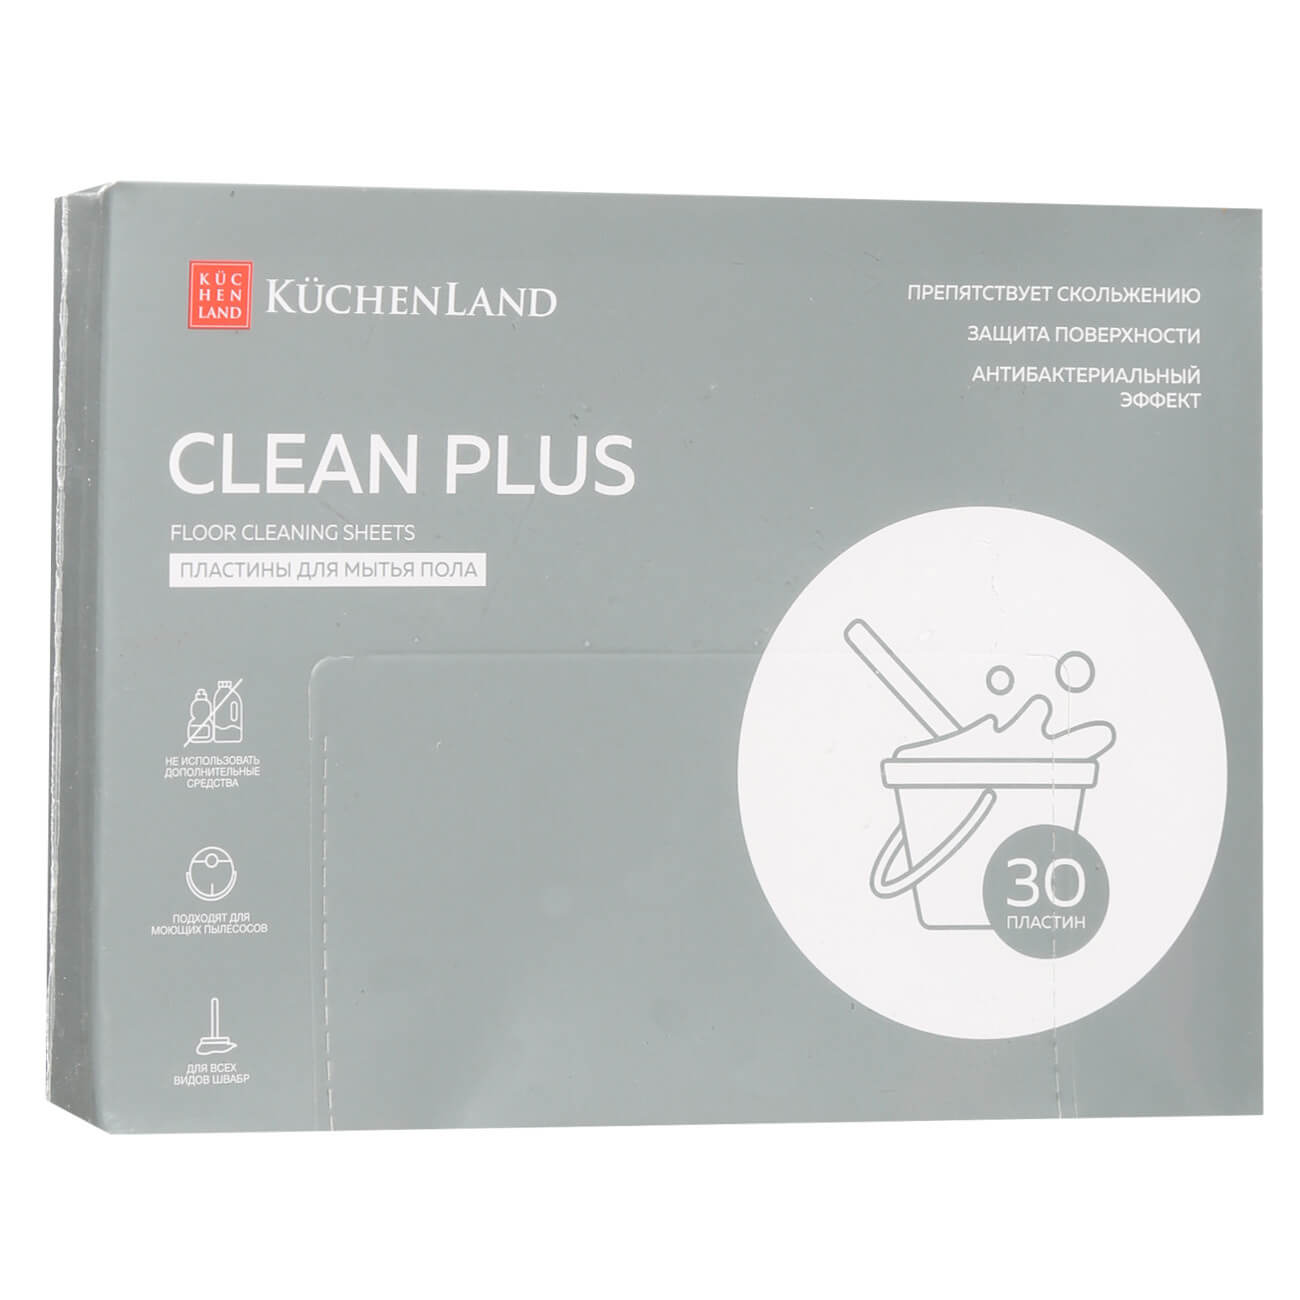 Пластины для мытья полов, 30 шт, антибактериальные, ароматизированные, Clean plus